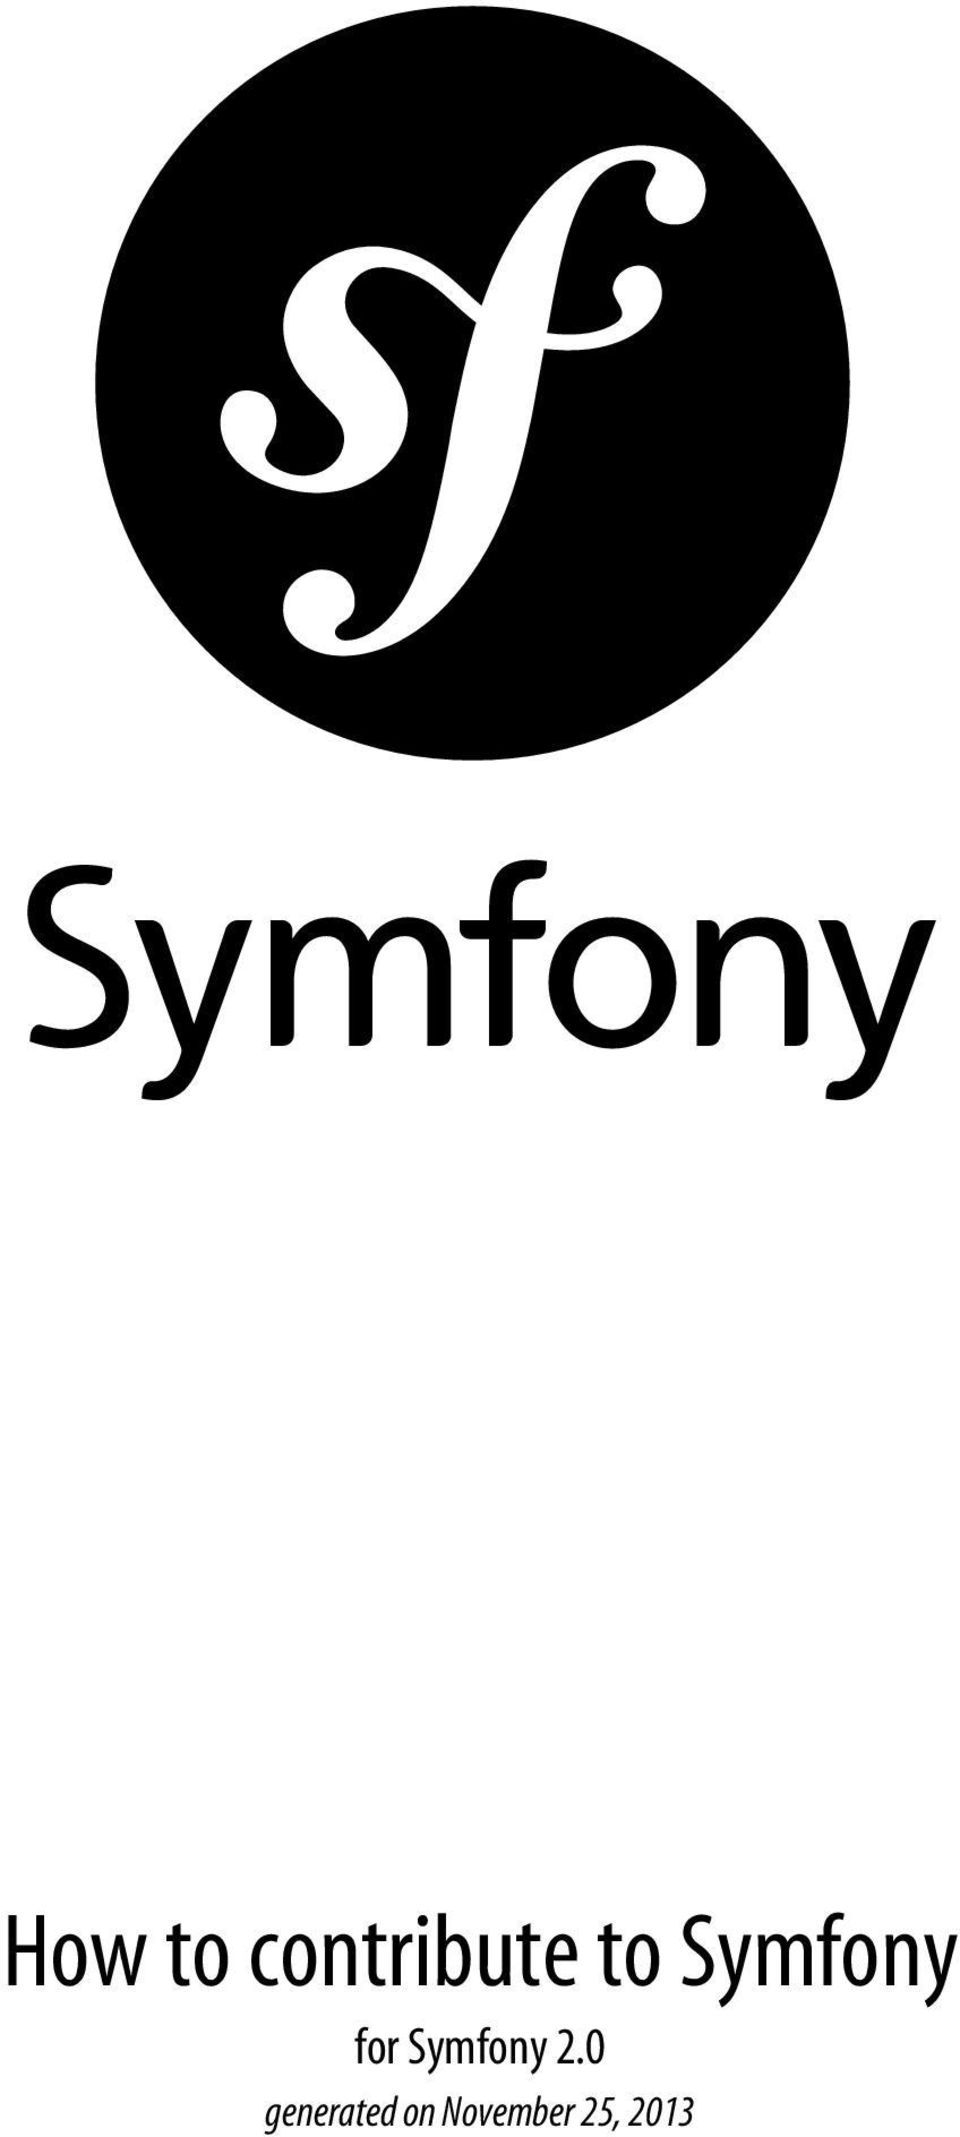 to Symfony